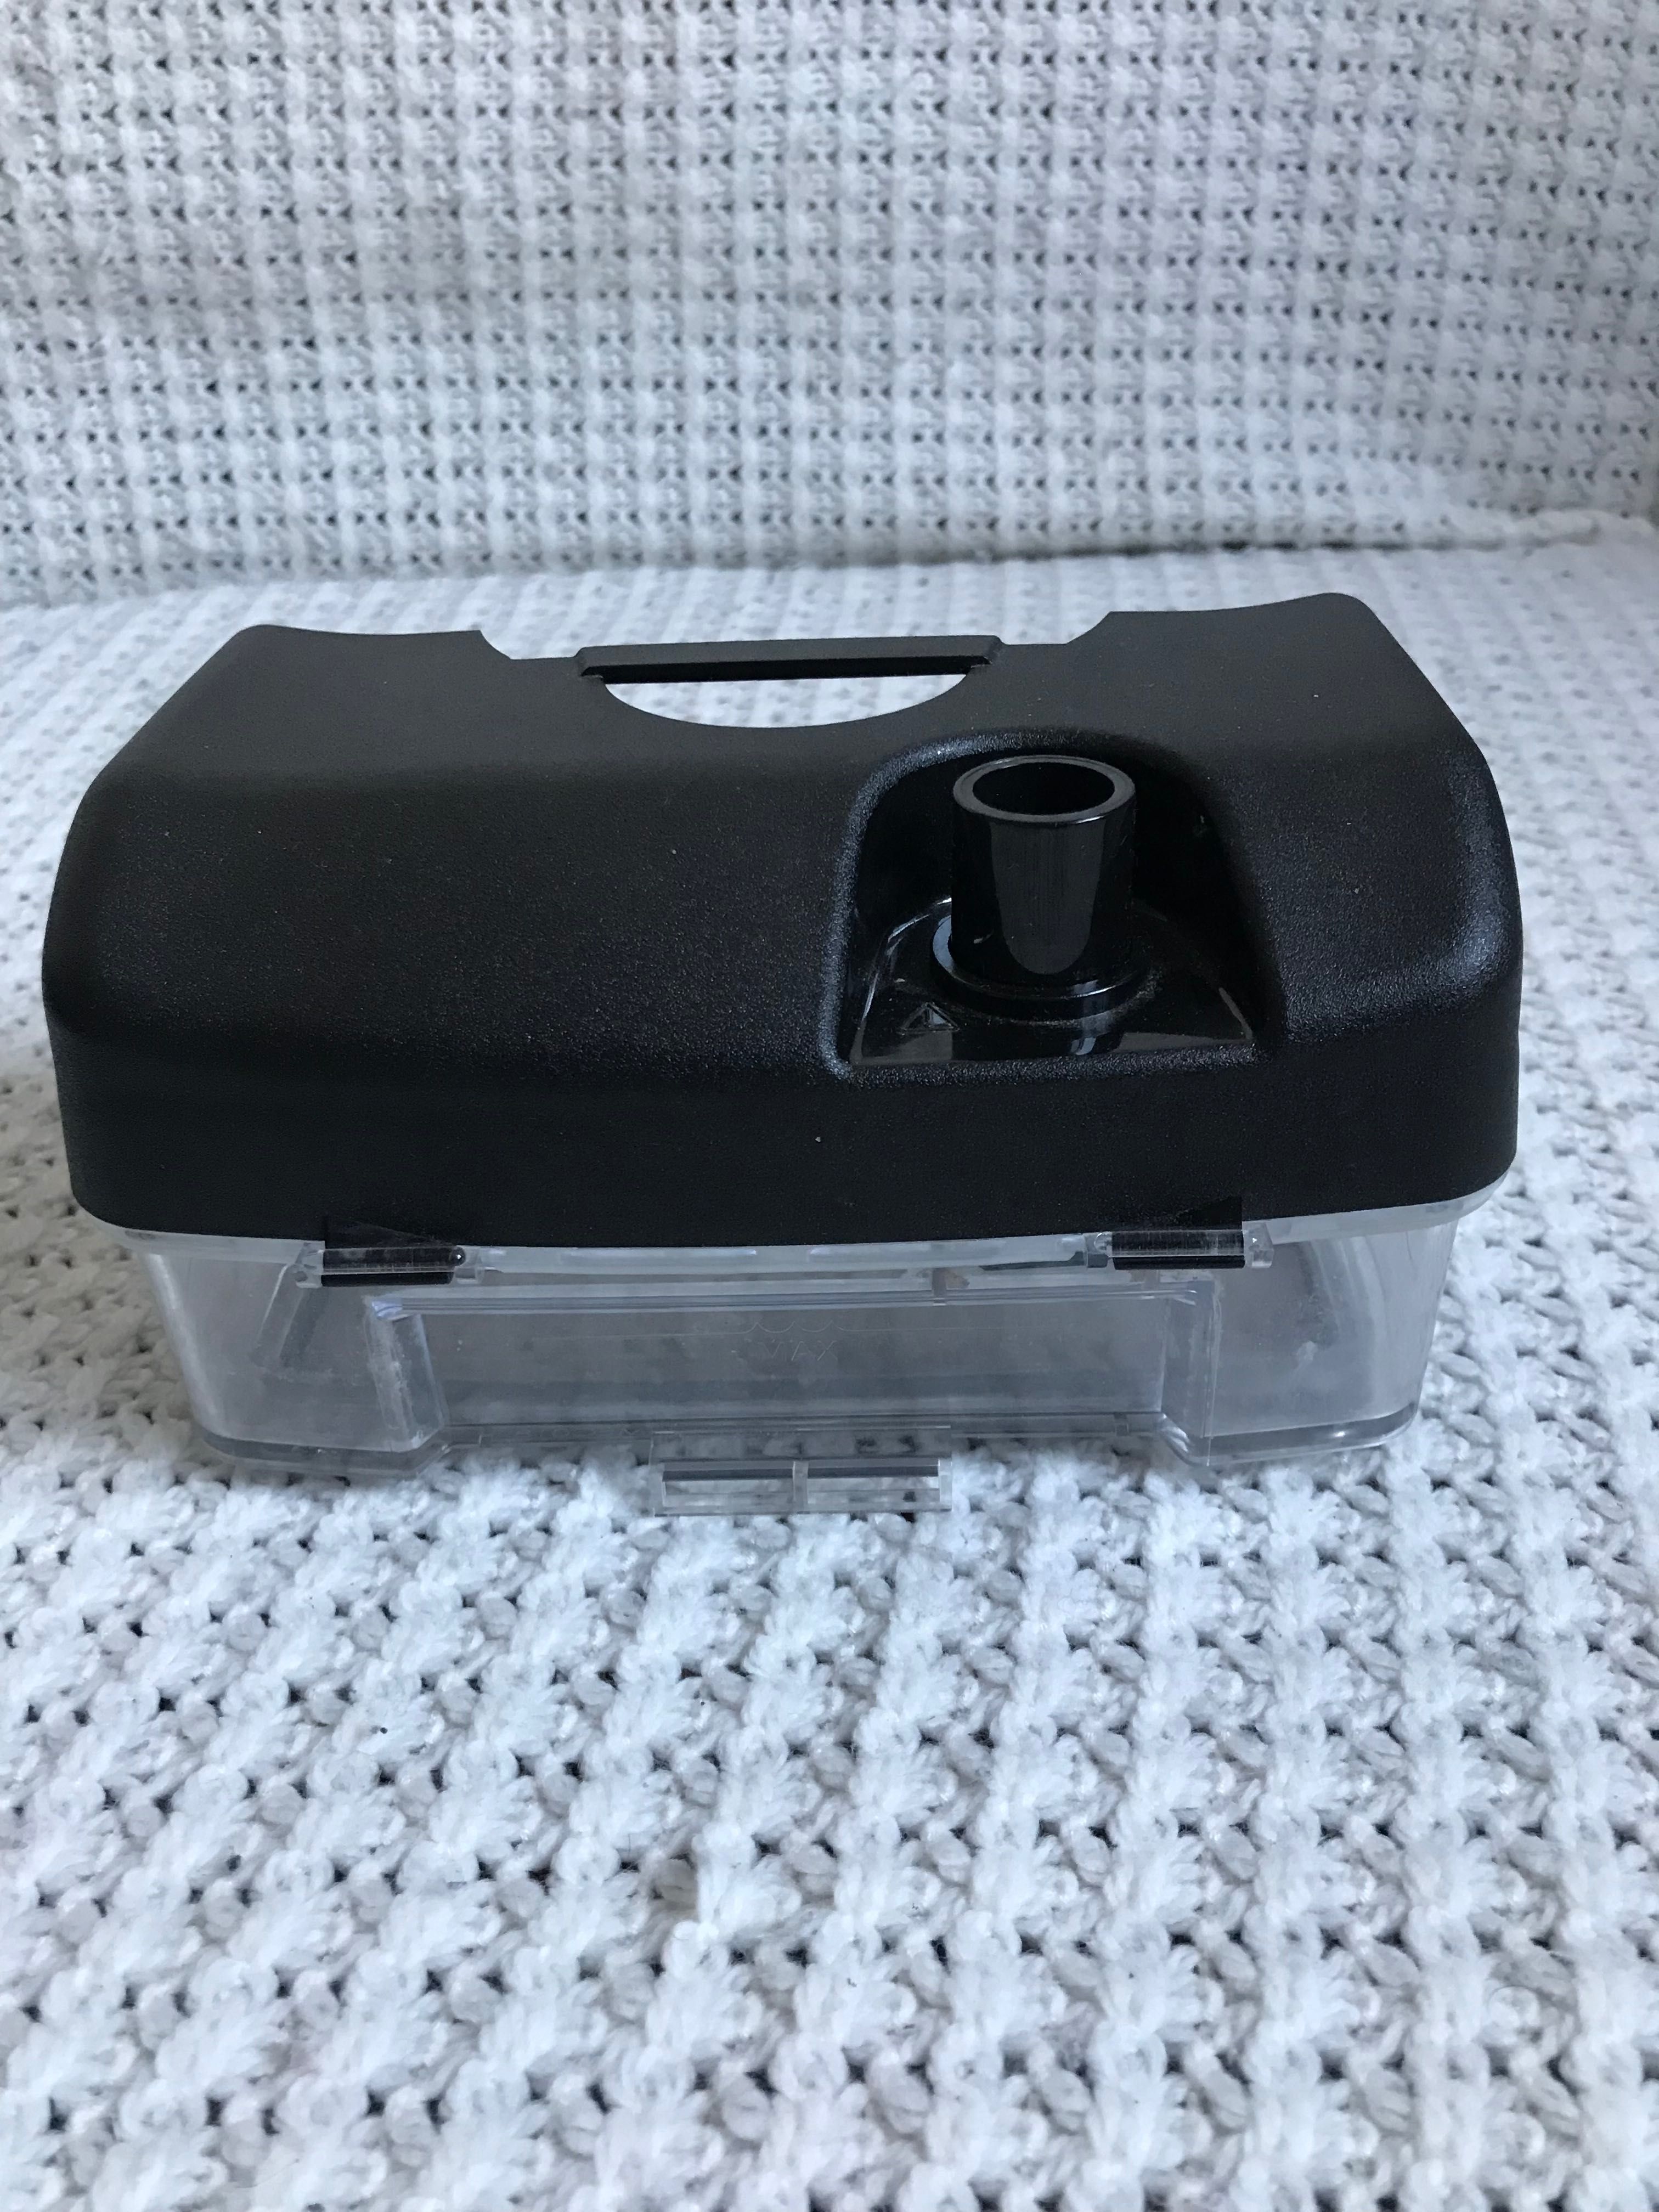 Auto-CPAP SEFAM DreamStar